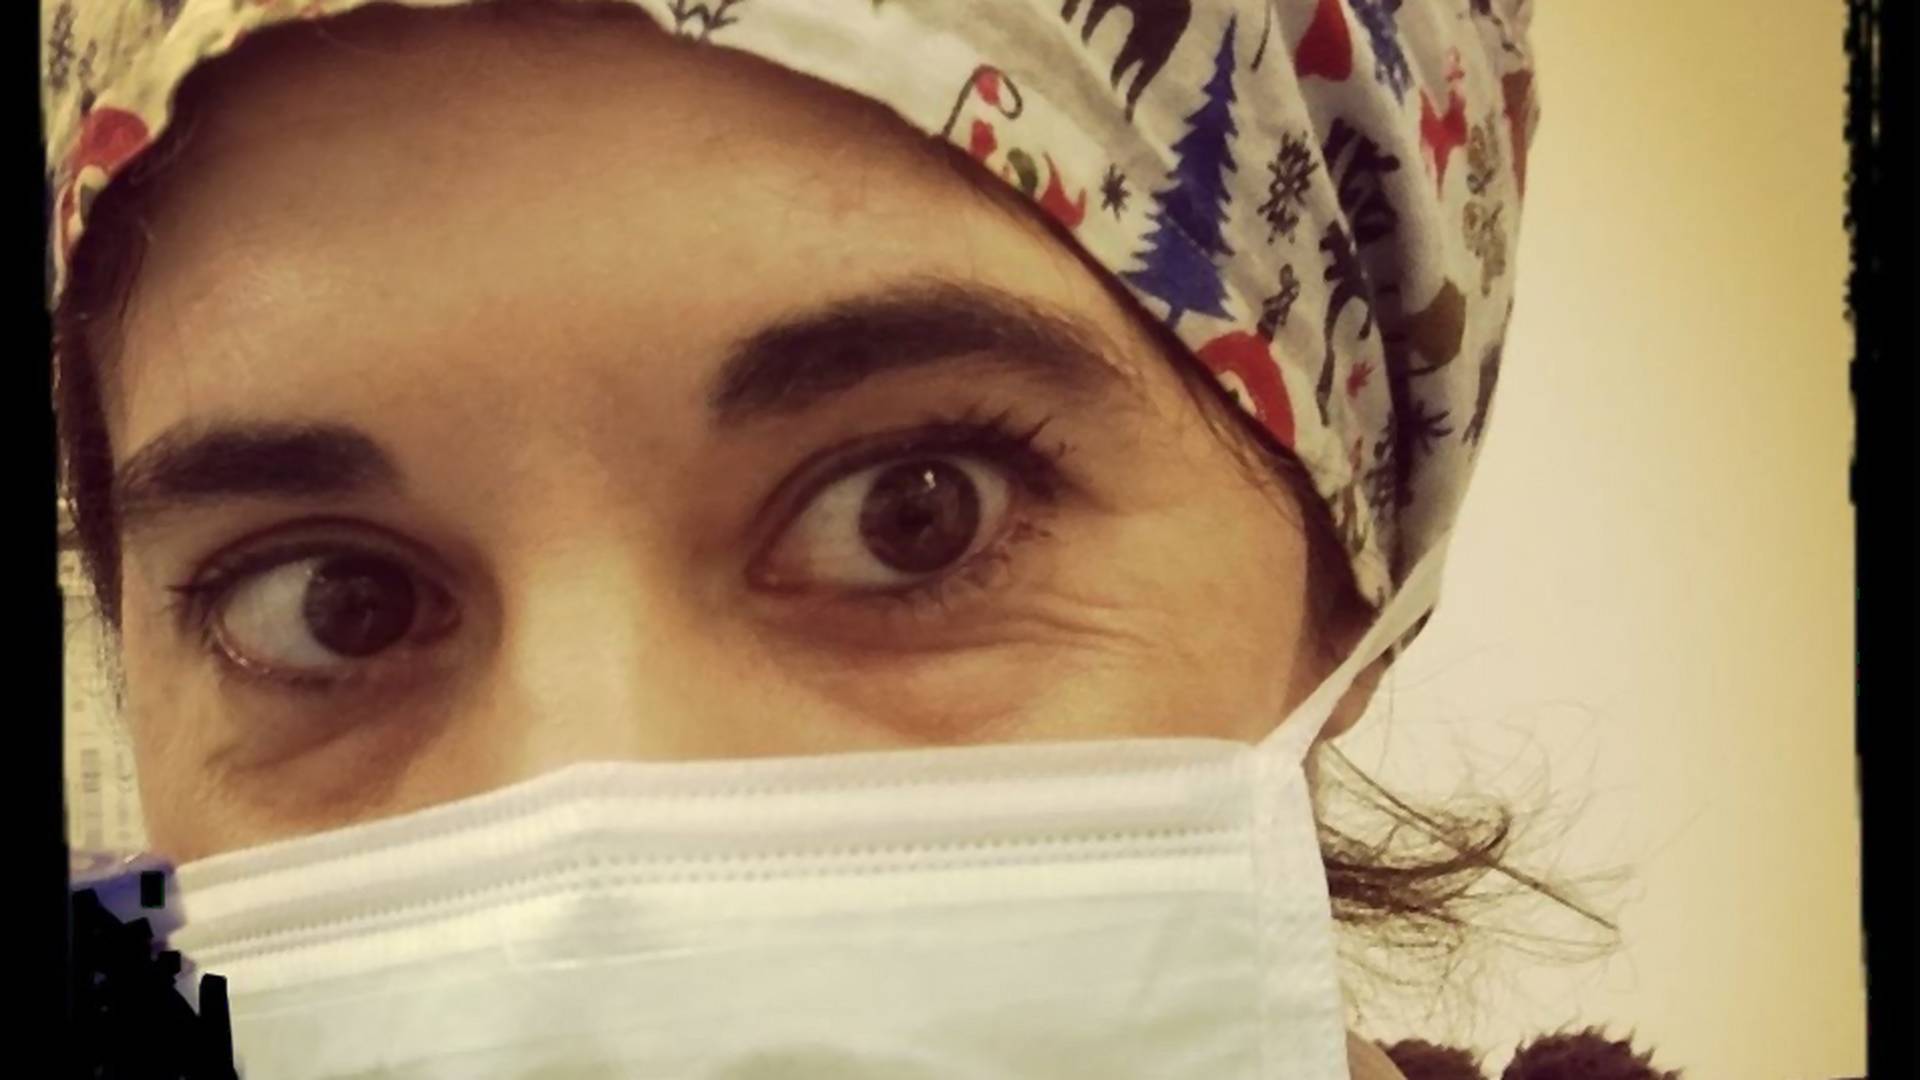 Öngyilkos lett egy 34 éves olasz ápolónő, miután pozitív lett a koronavírus-tesztje